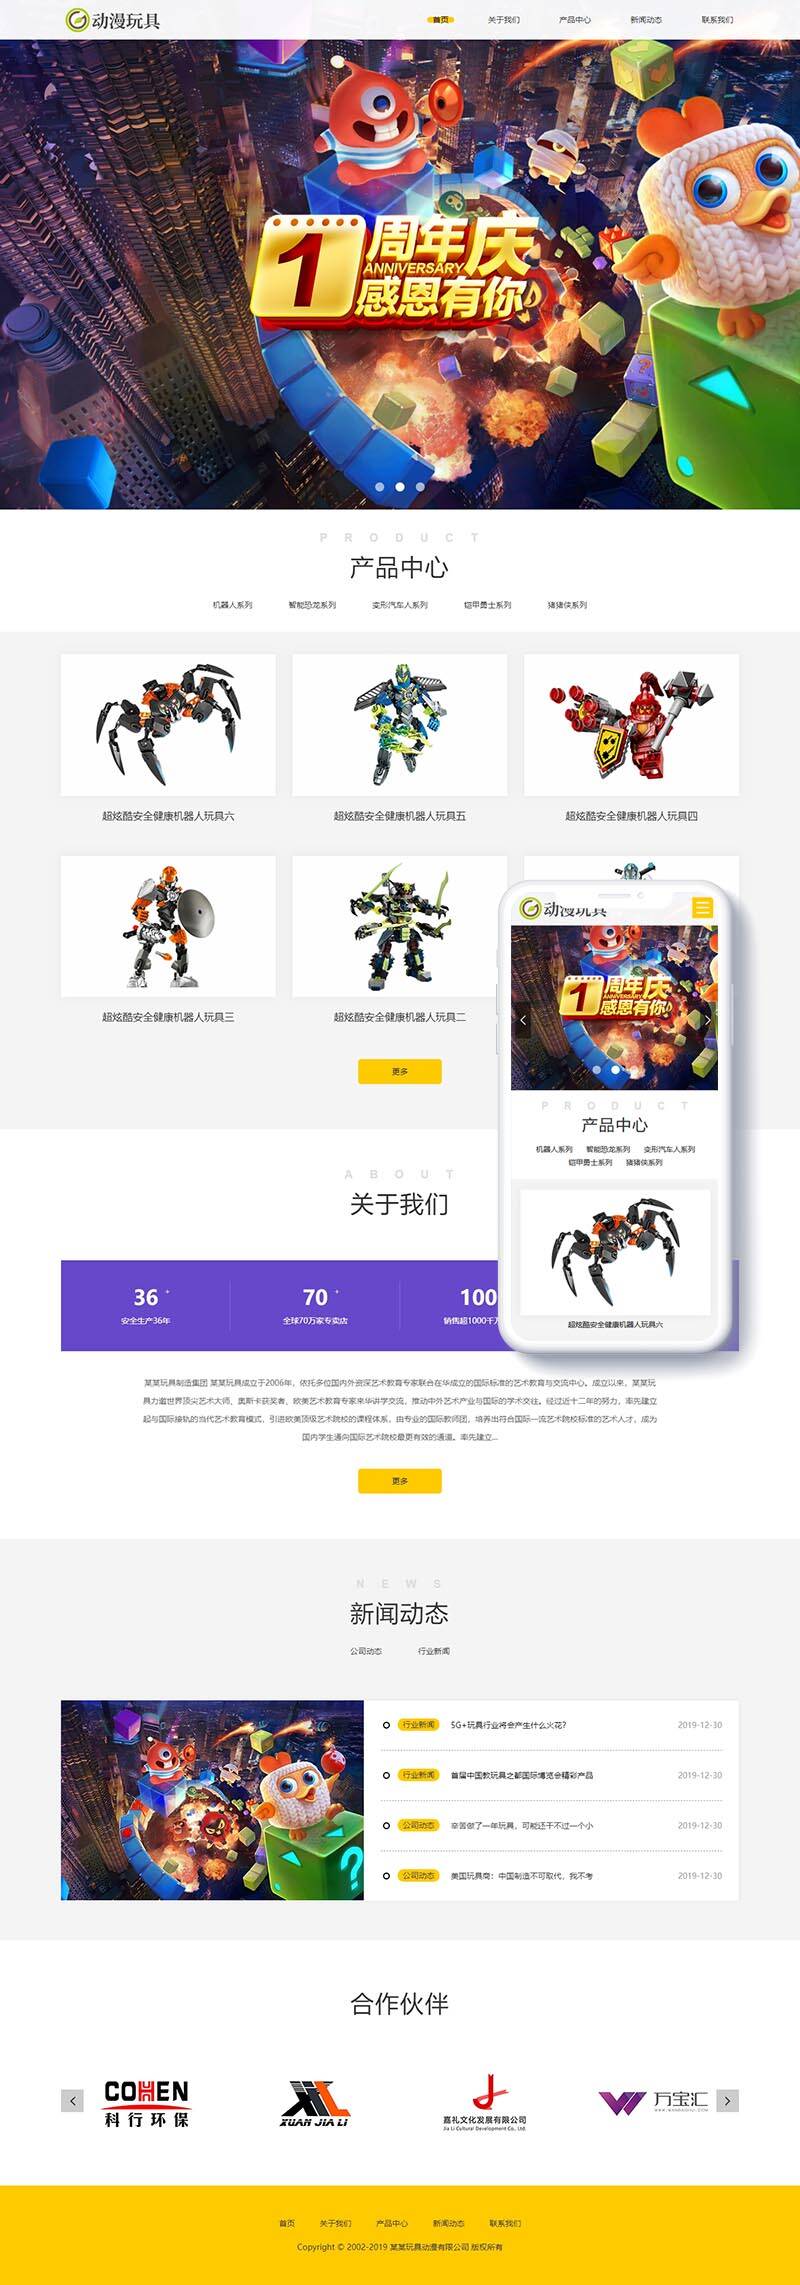 C206 织梦dedecms响应式机器人动漫玩具公司网站模板(自适应手机移动端)